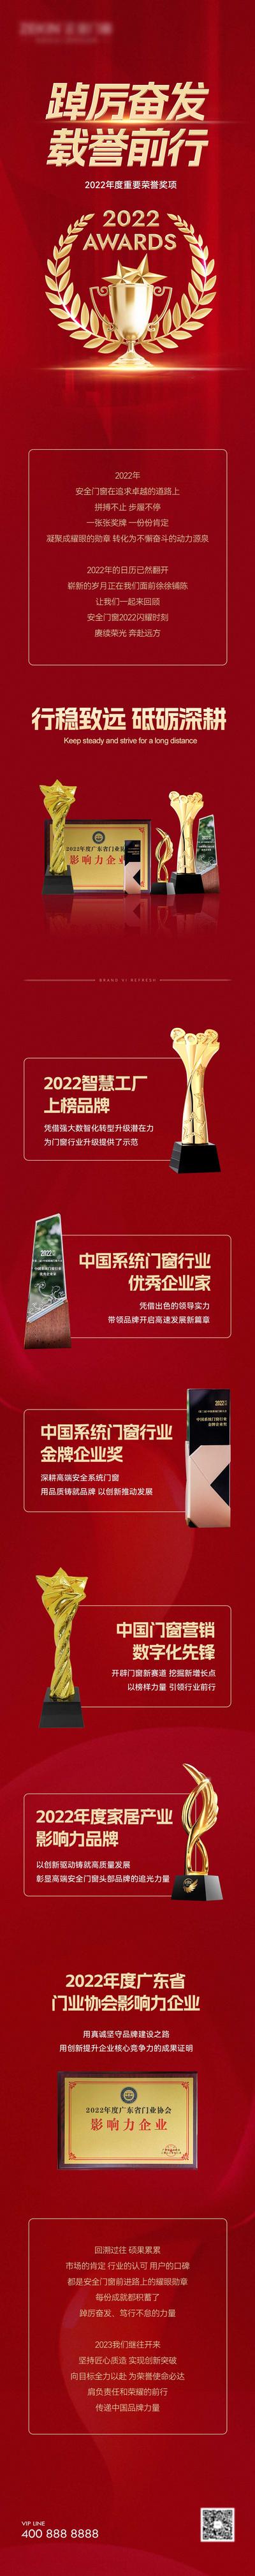 南门网 广告 海报 长图 荣誉 排行 专题 奖项 奖杯 企业 集团